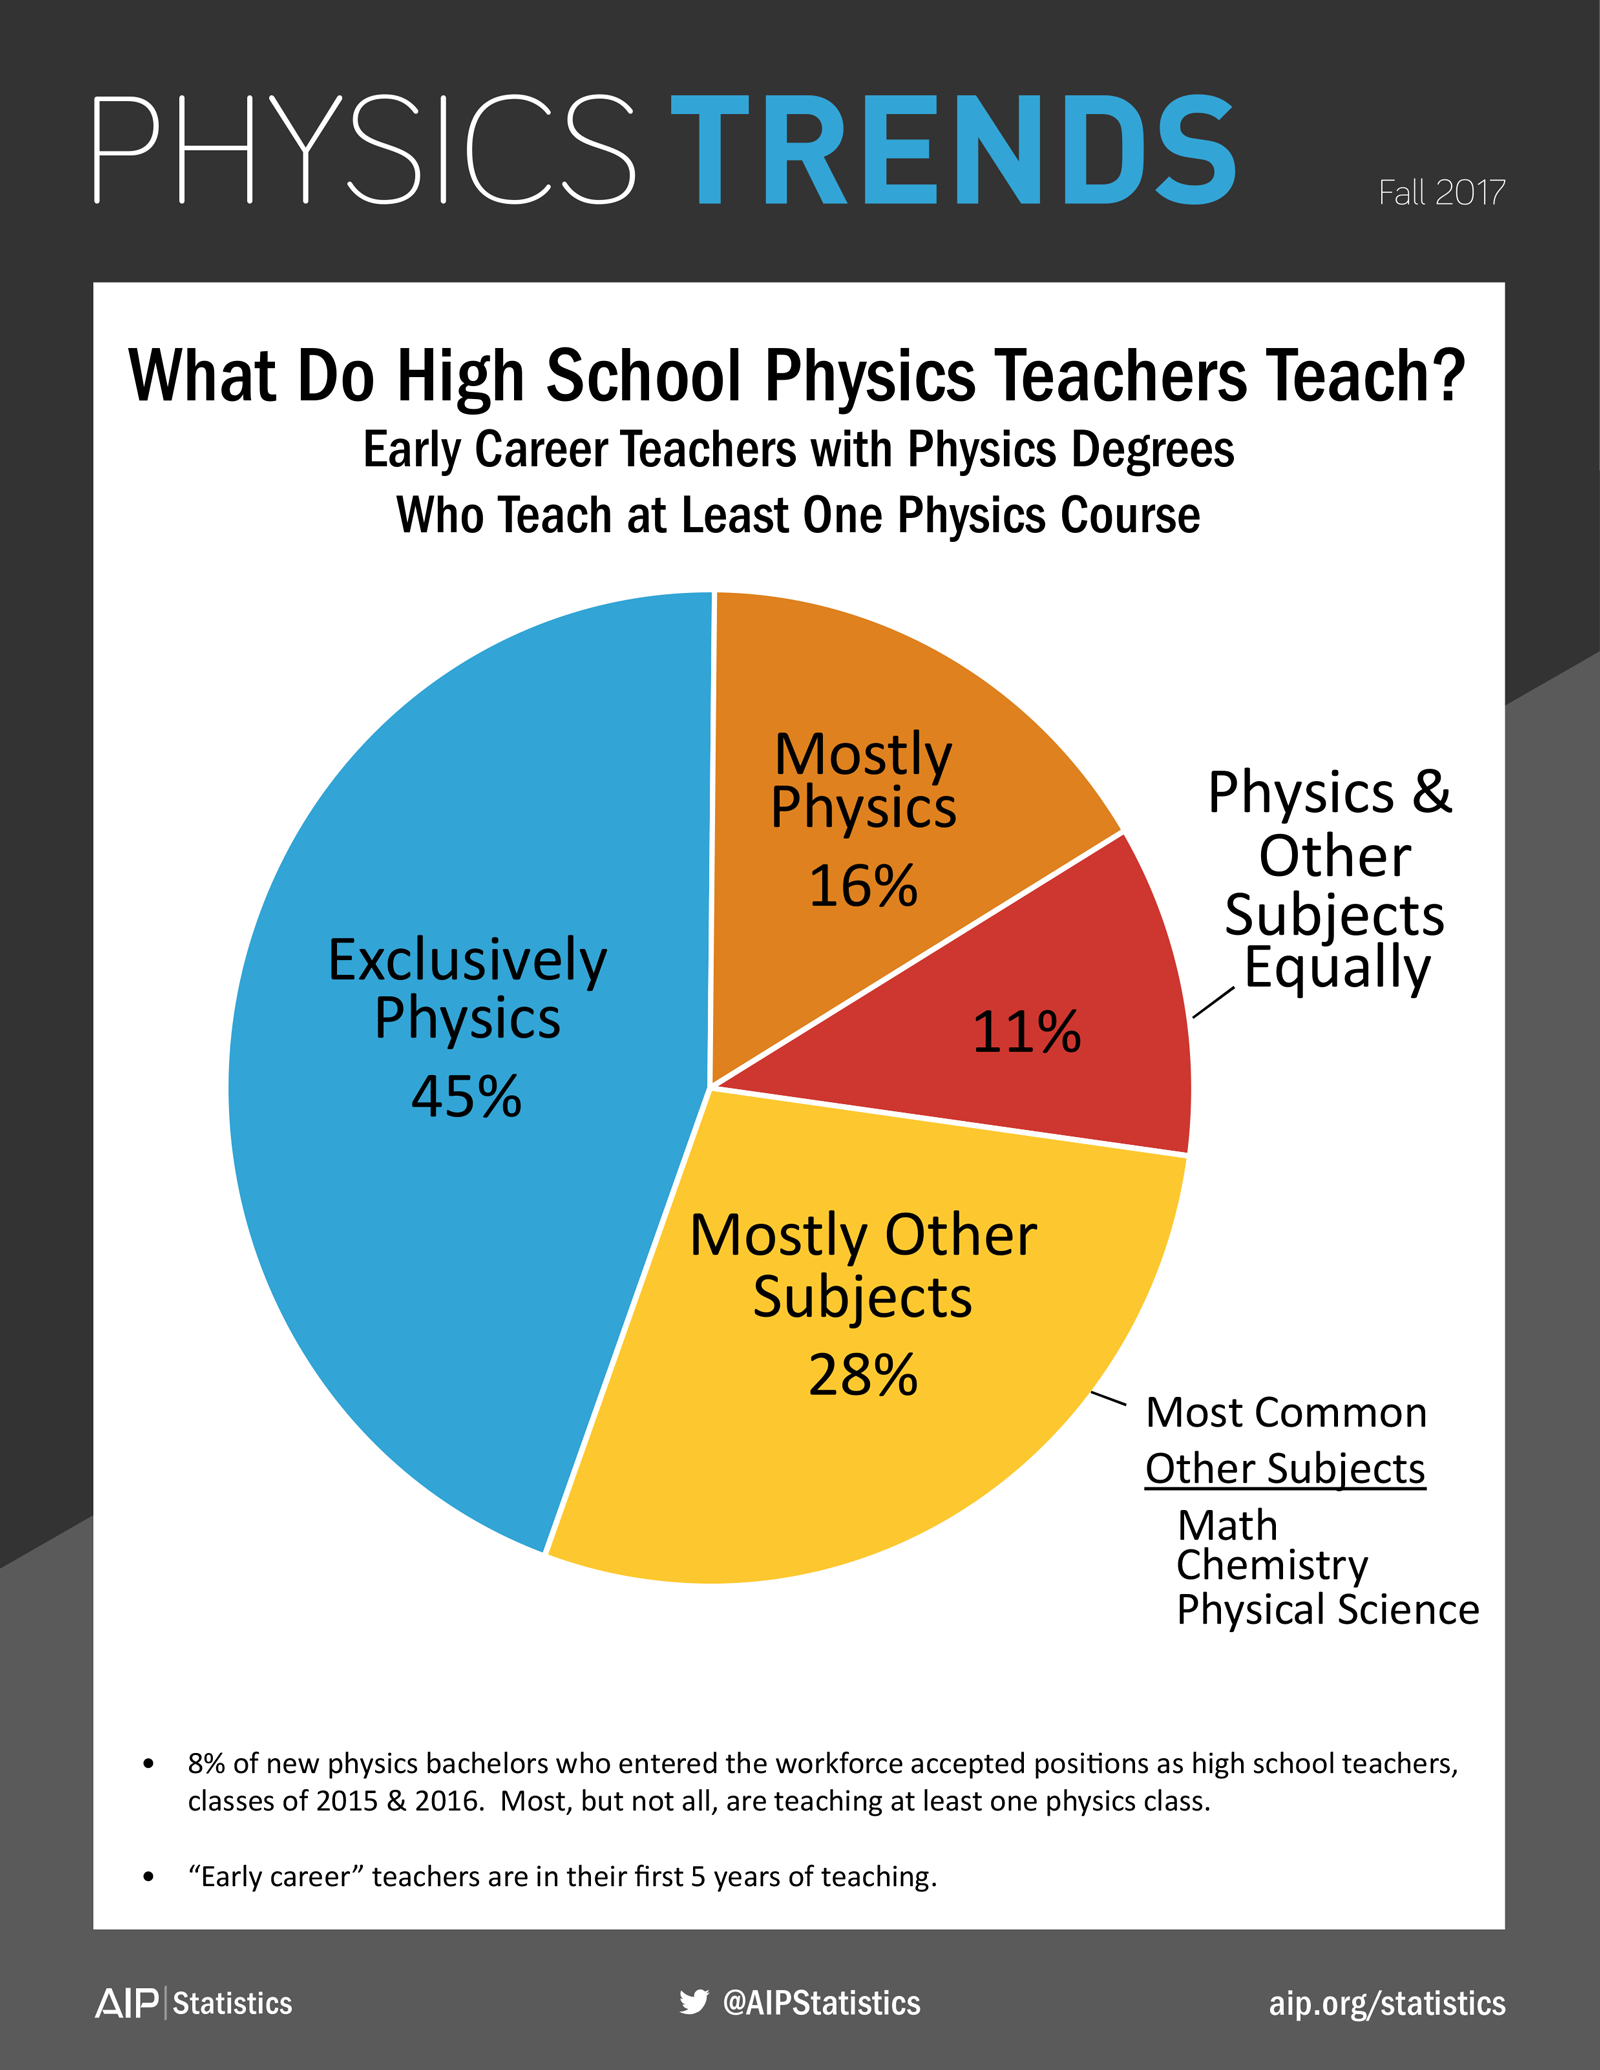 What Do High School Physics Teachers Teach?